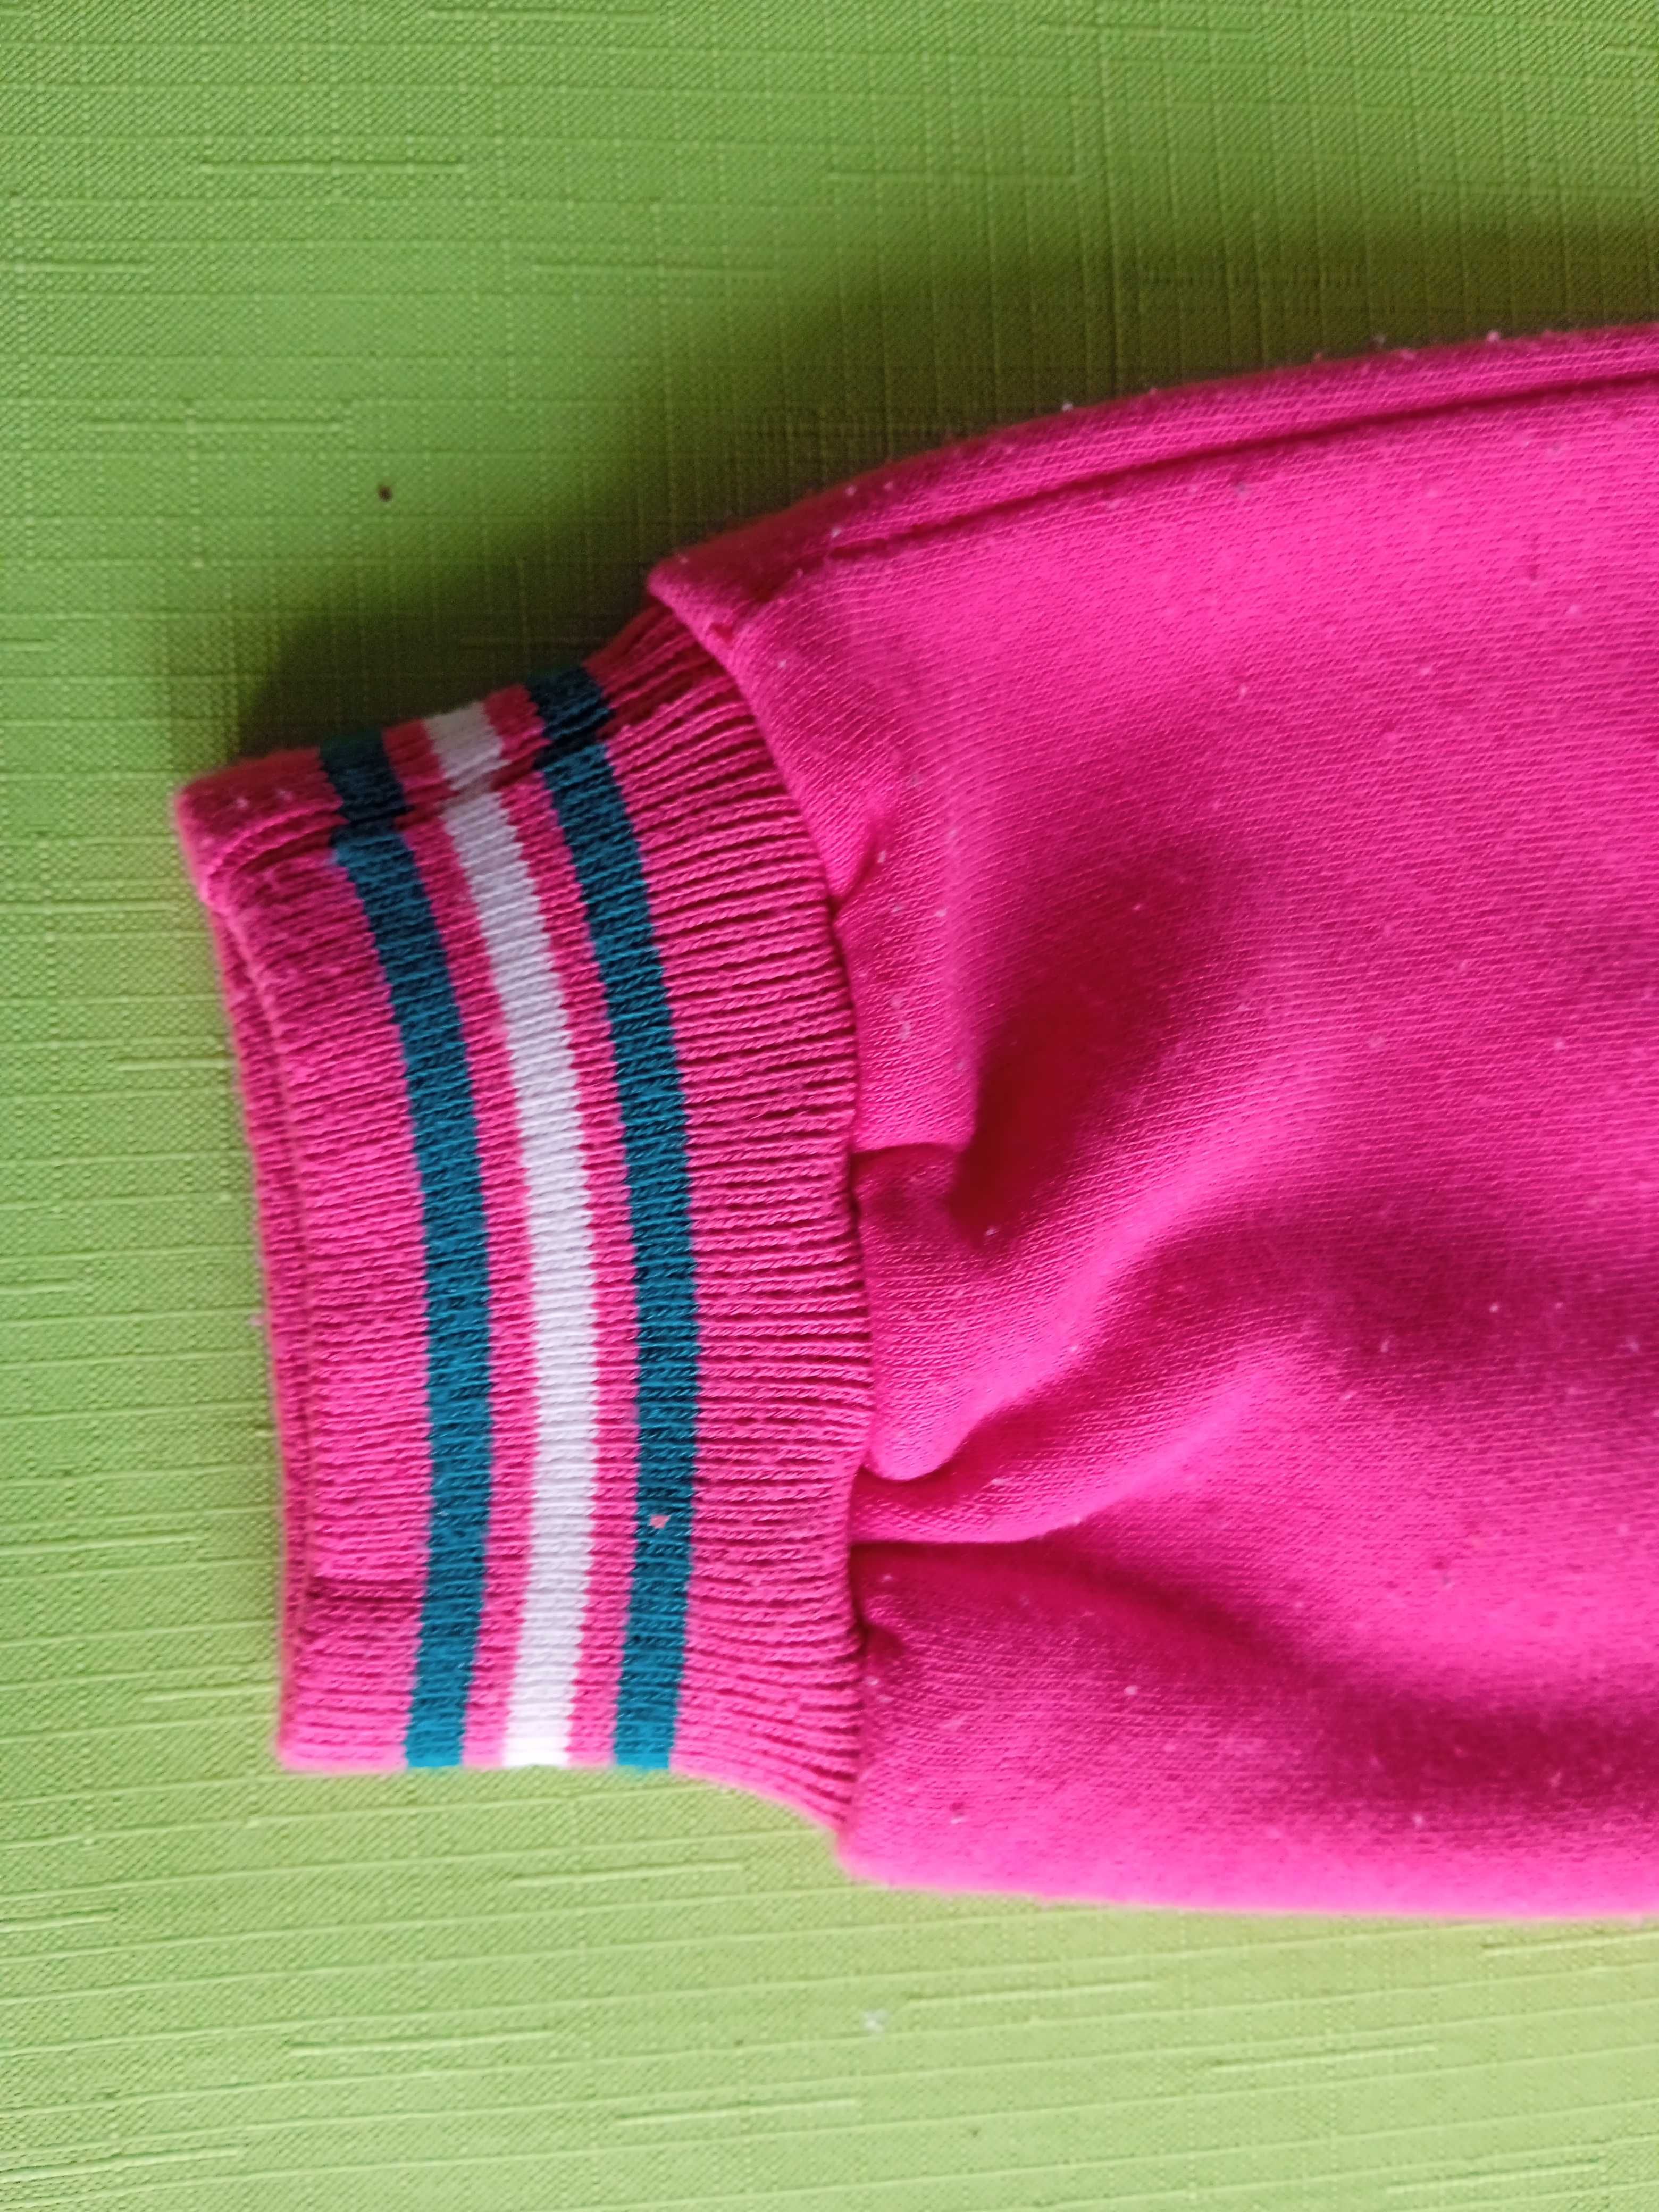 Spodnie dresowe - dla dziewczynki - różowe - roz. 122 -